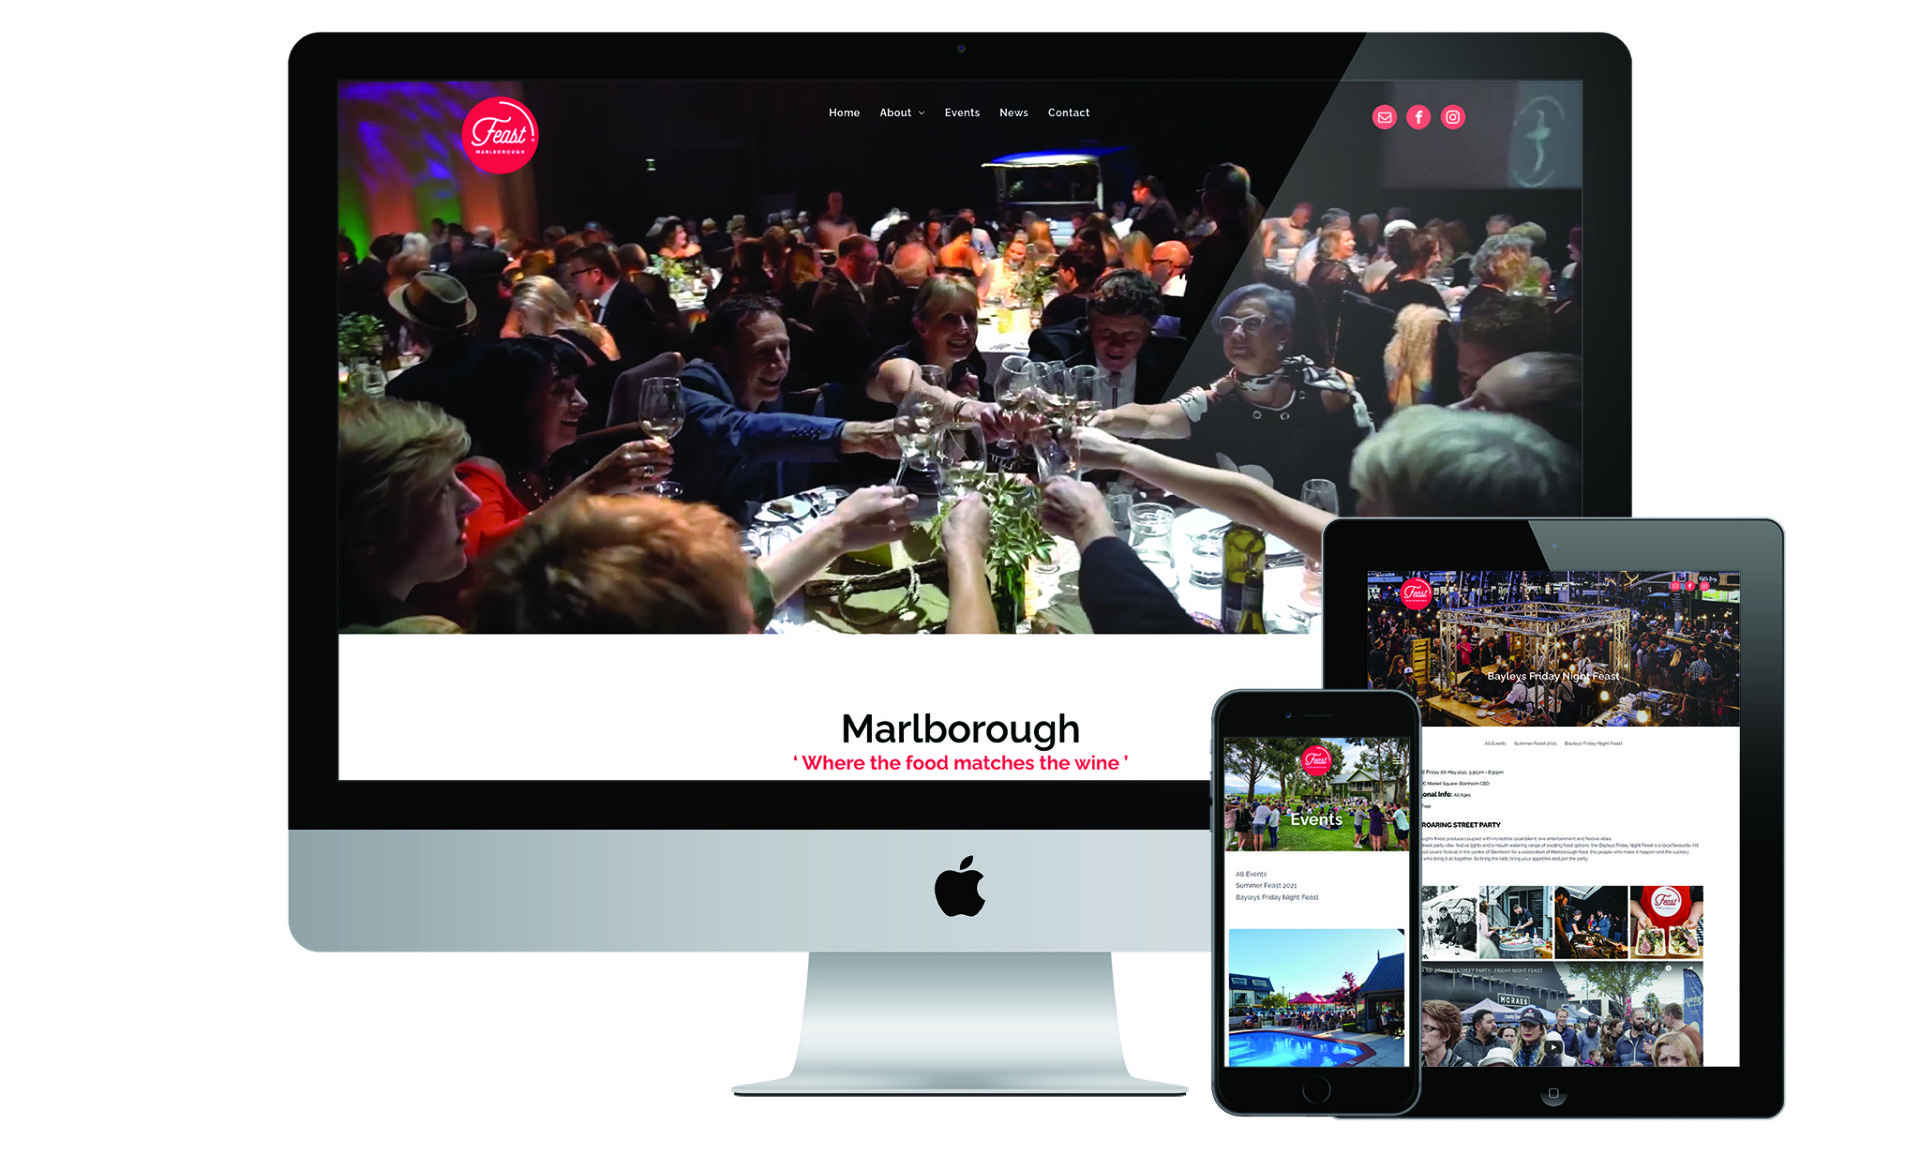 Feast Marlborough website designed by Vanilla Hayes creative graphic design  studio in Blenheim, Marlborough, New Zealand